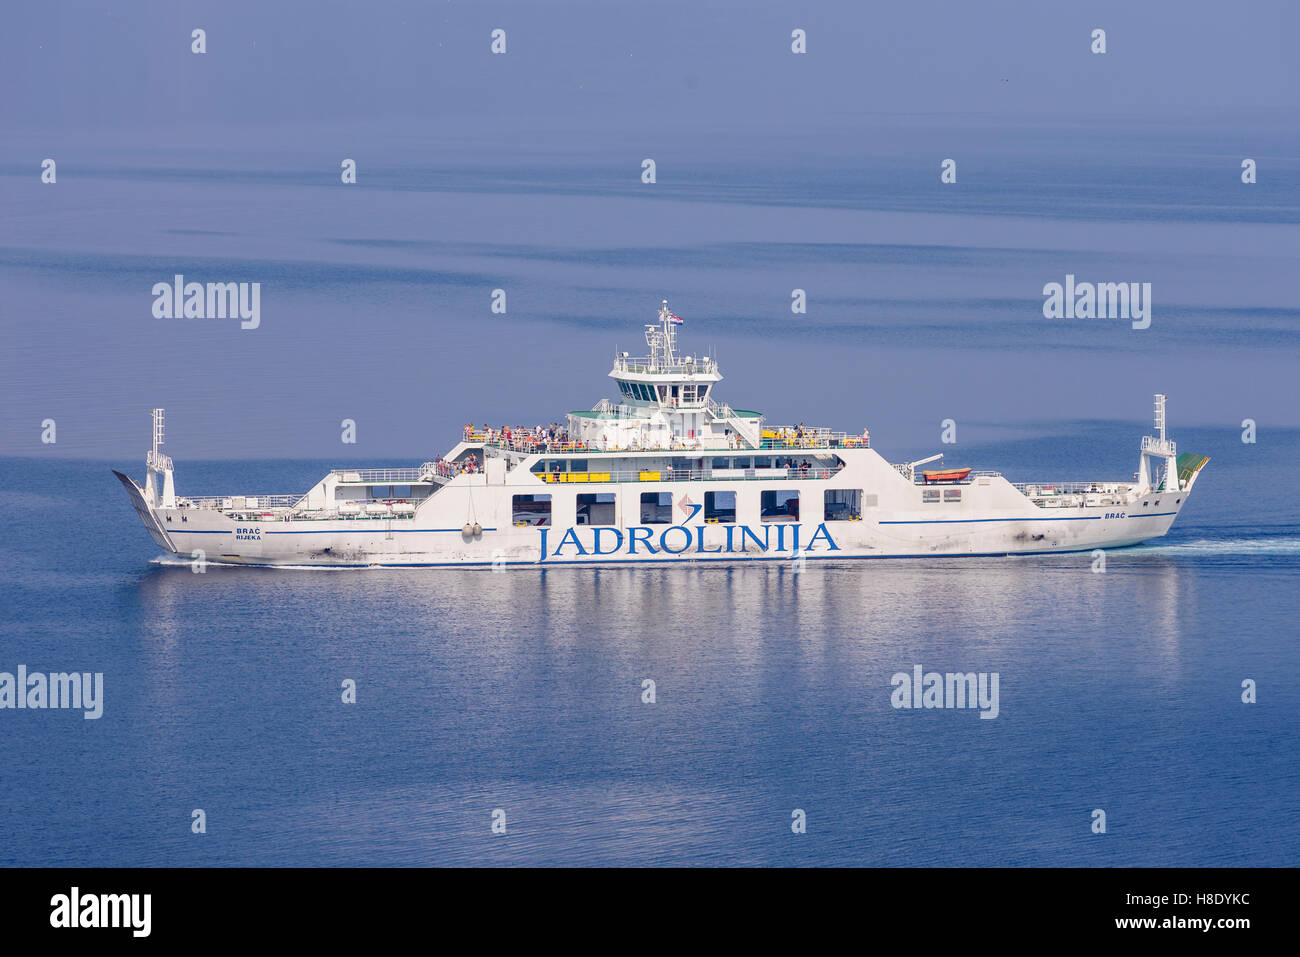 Split, Croatie - 15 septembre 2016 : Ferry ship Brac sur route régulière entre Krk et Cres. Exploité par ferry Jadrolinija. Banque D'Images